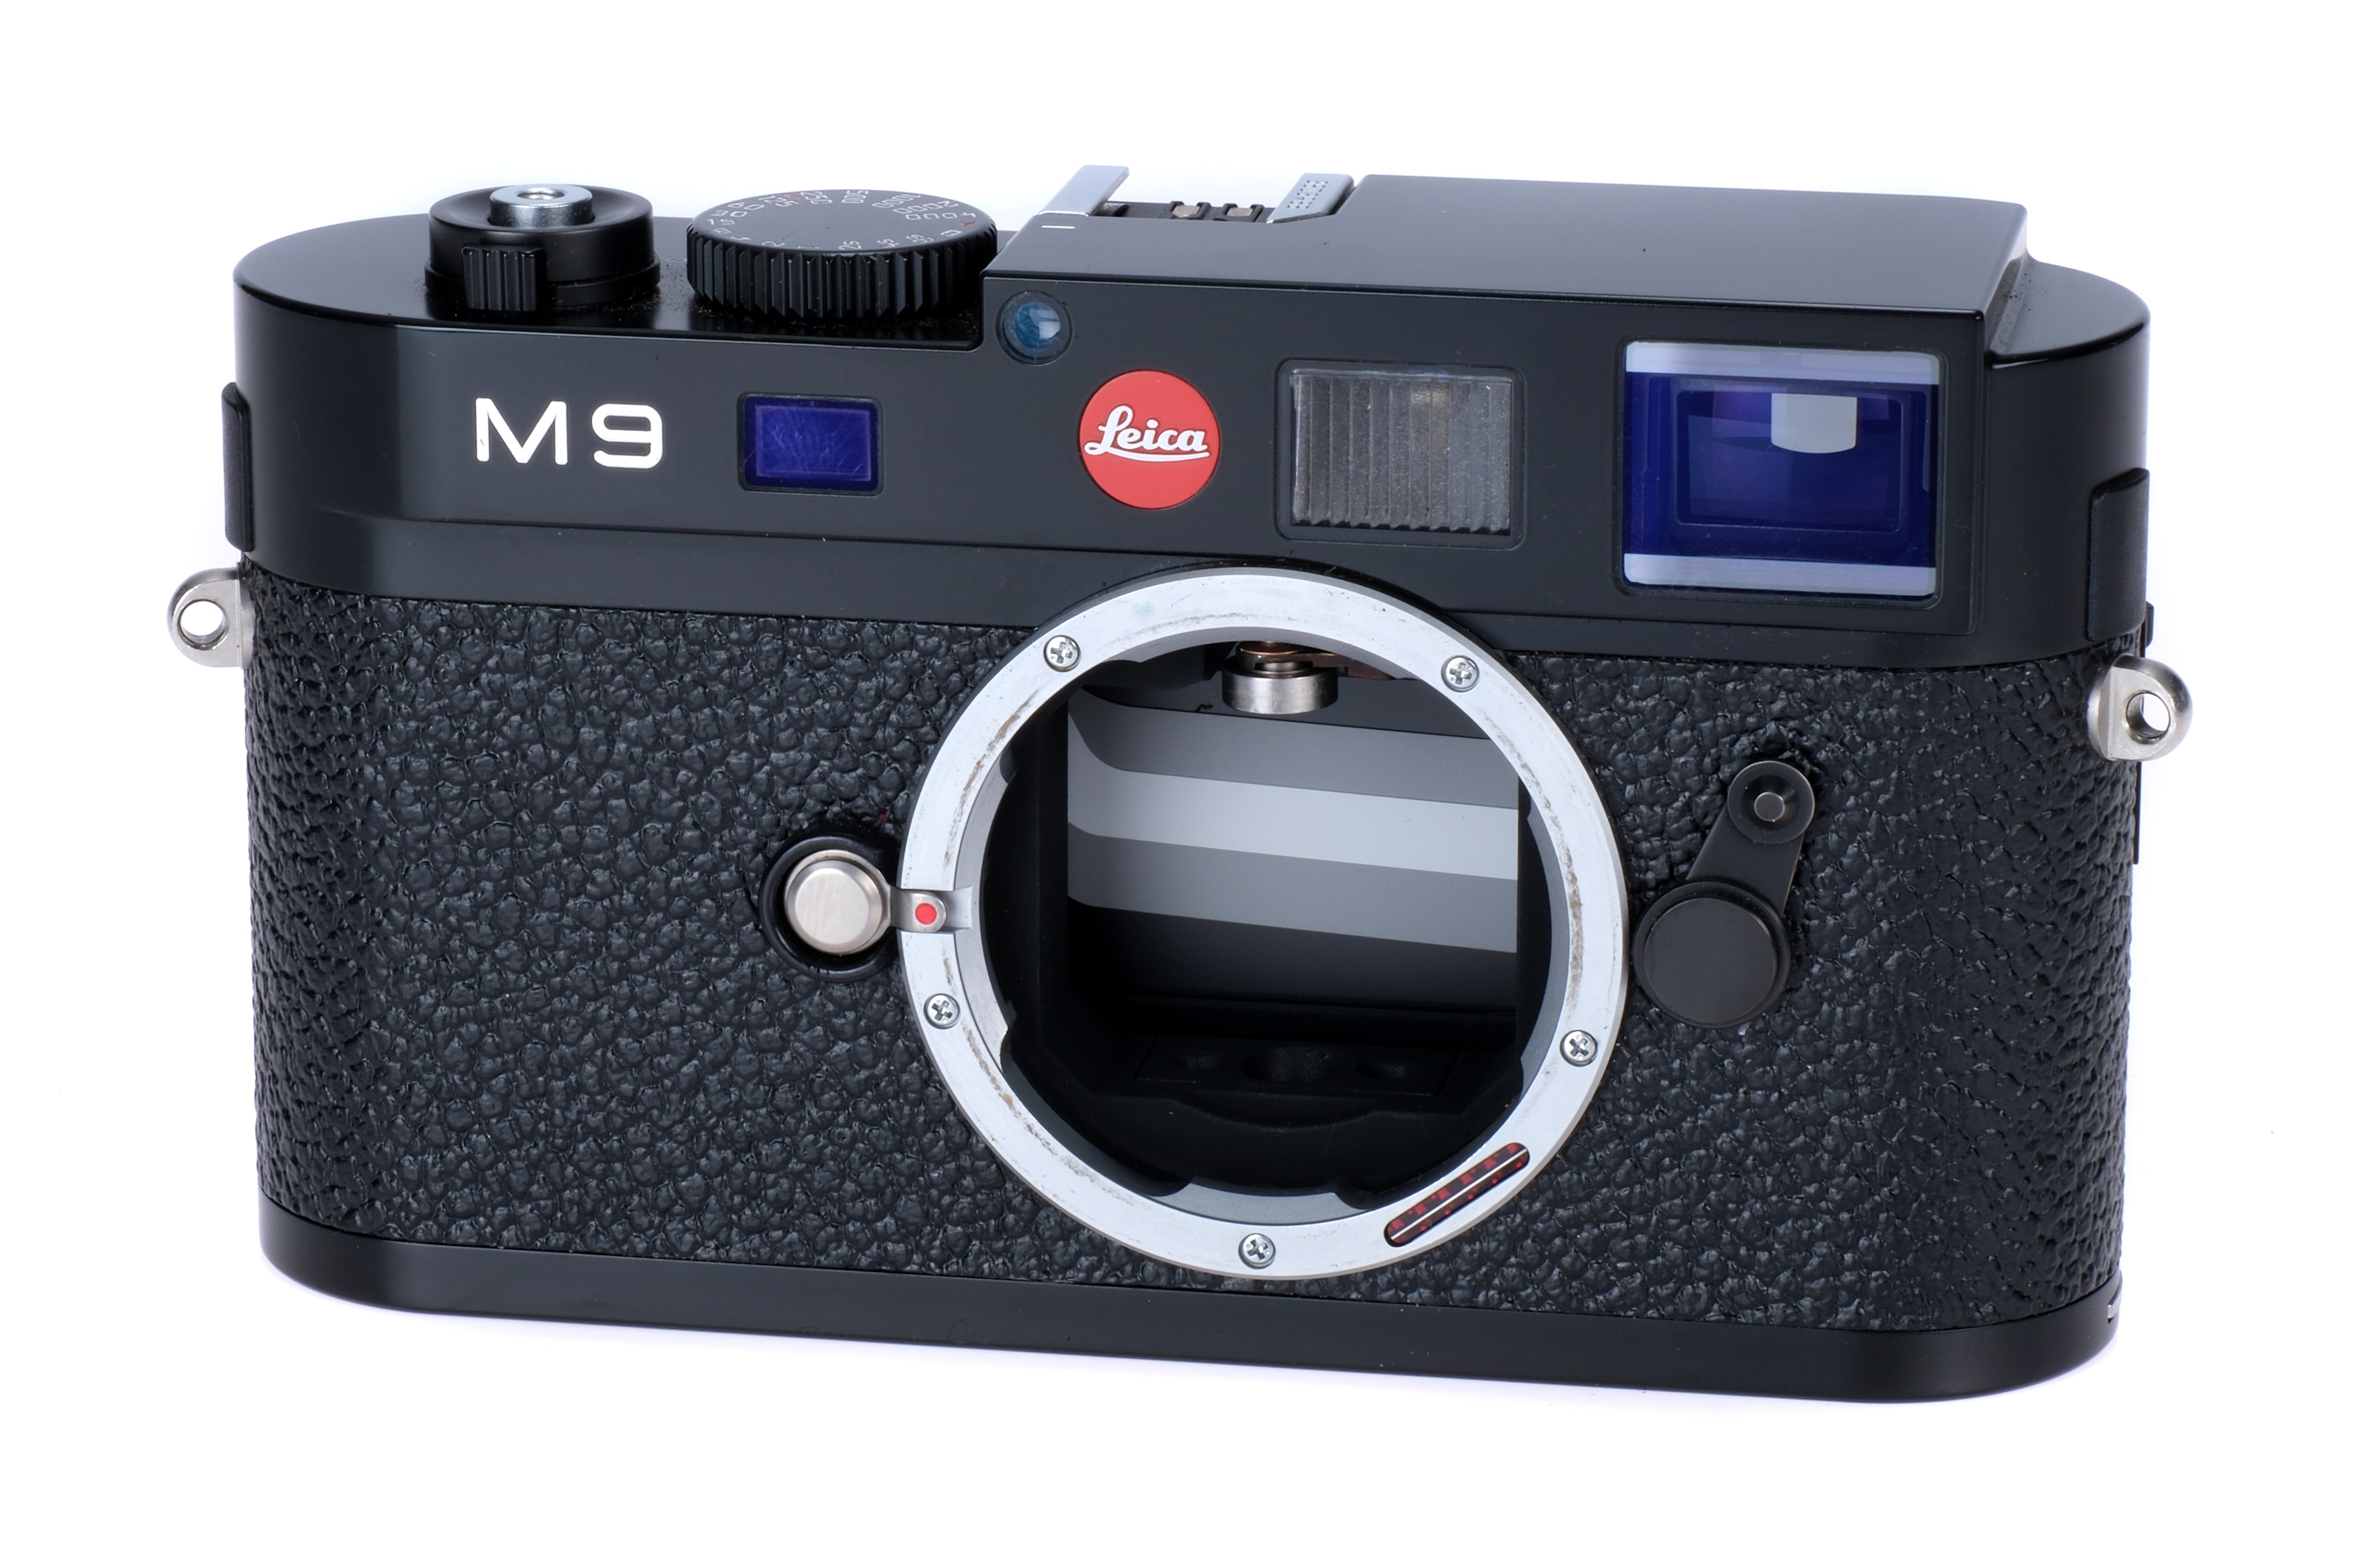 A Leica M9 Digital Rangefinder Body,